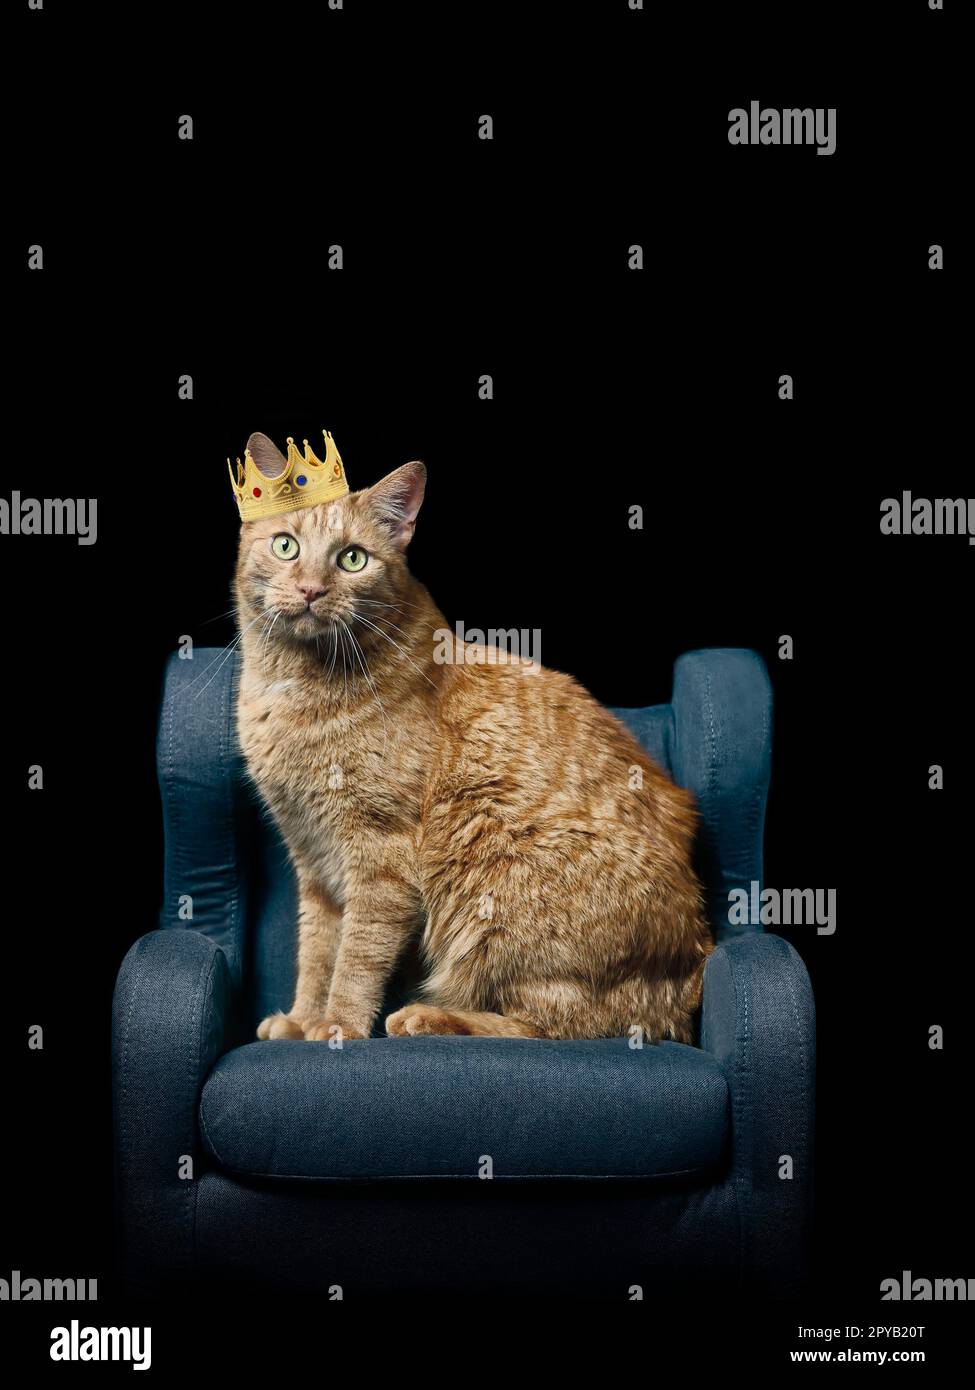 Gatto di zenzero seduto sulla poltrona e con una corona dorata, isolato su sfondo nero con spazio per le copie. Foto Stock